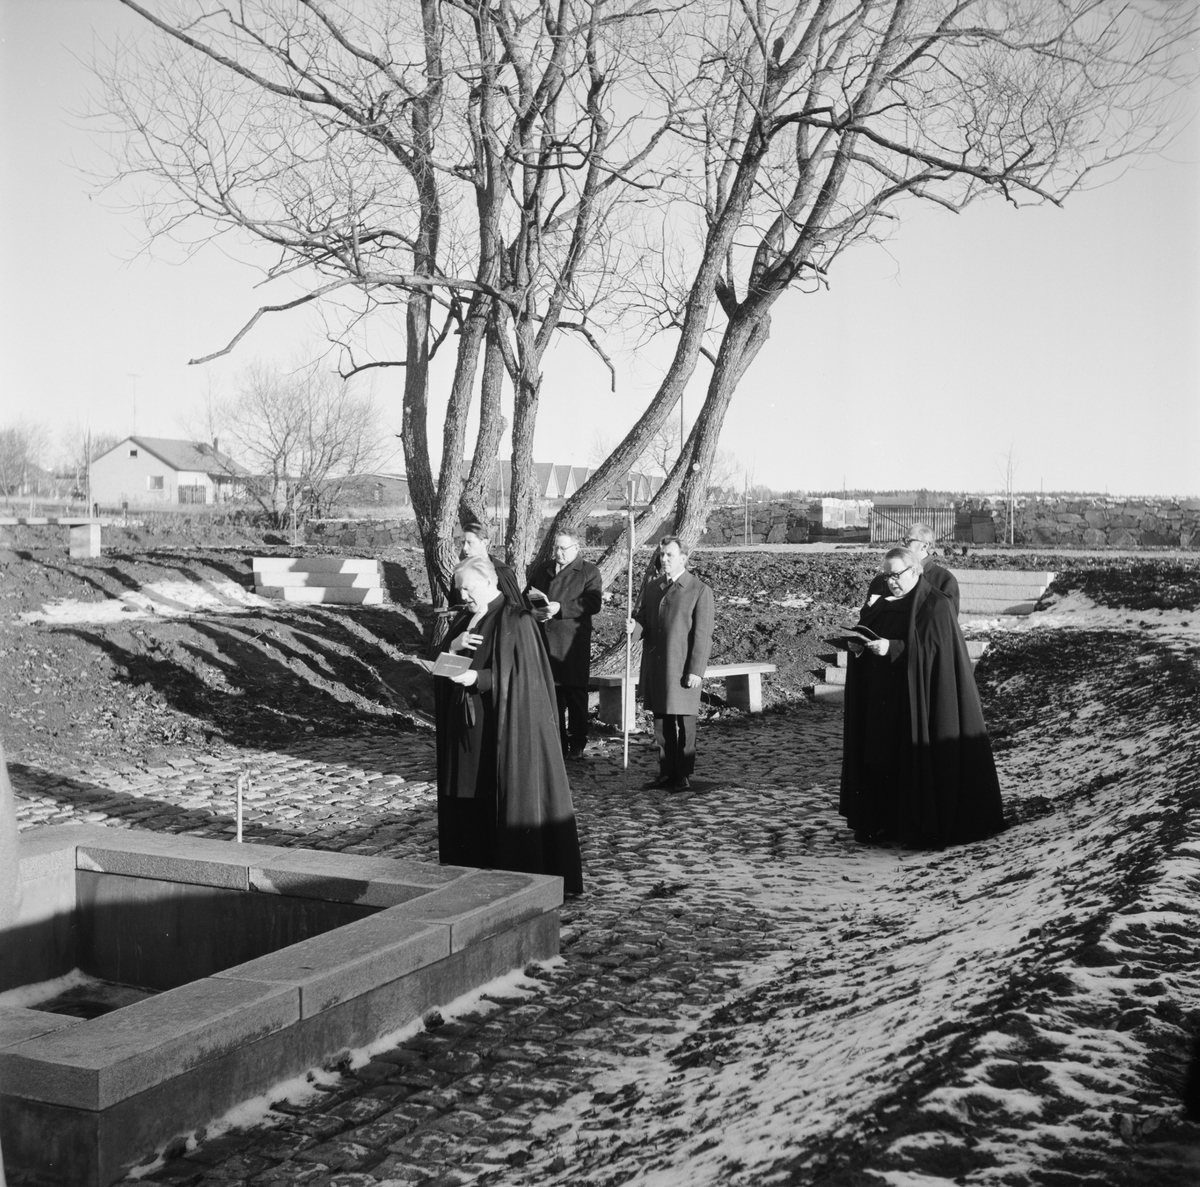 Invigning av utvidgad kyrkogård, Östervåla, Uppland 1971